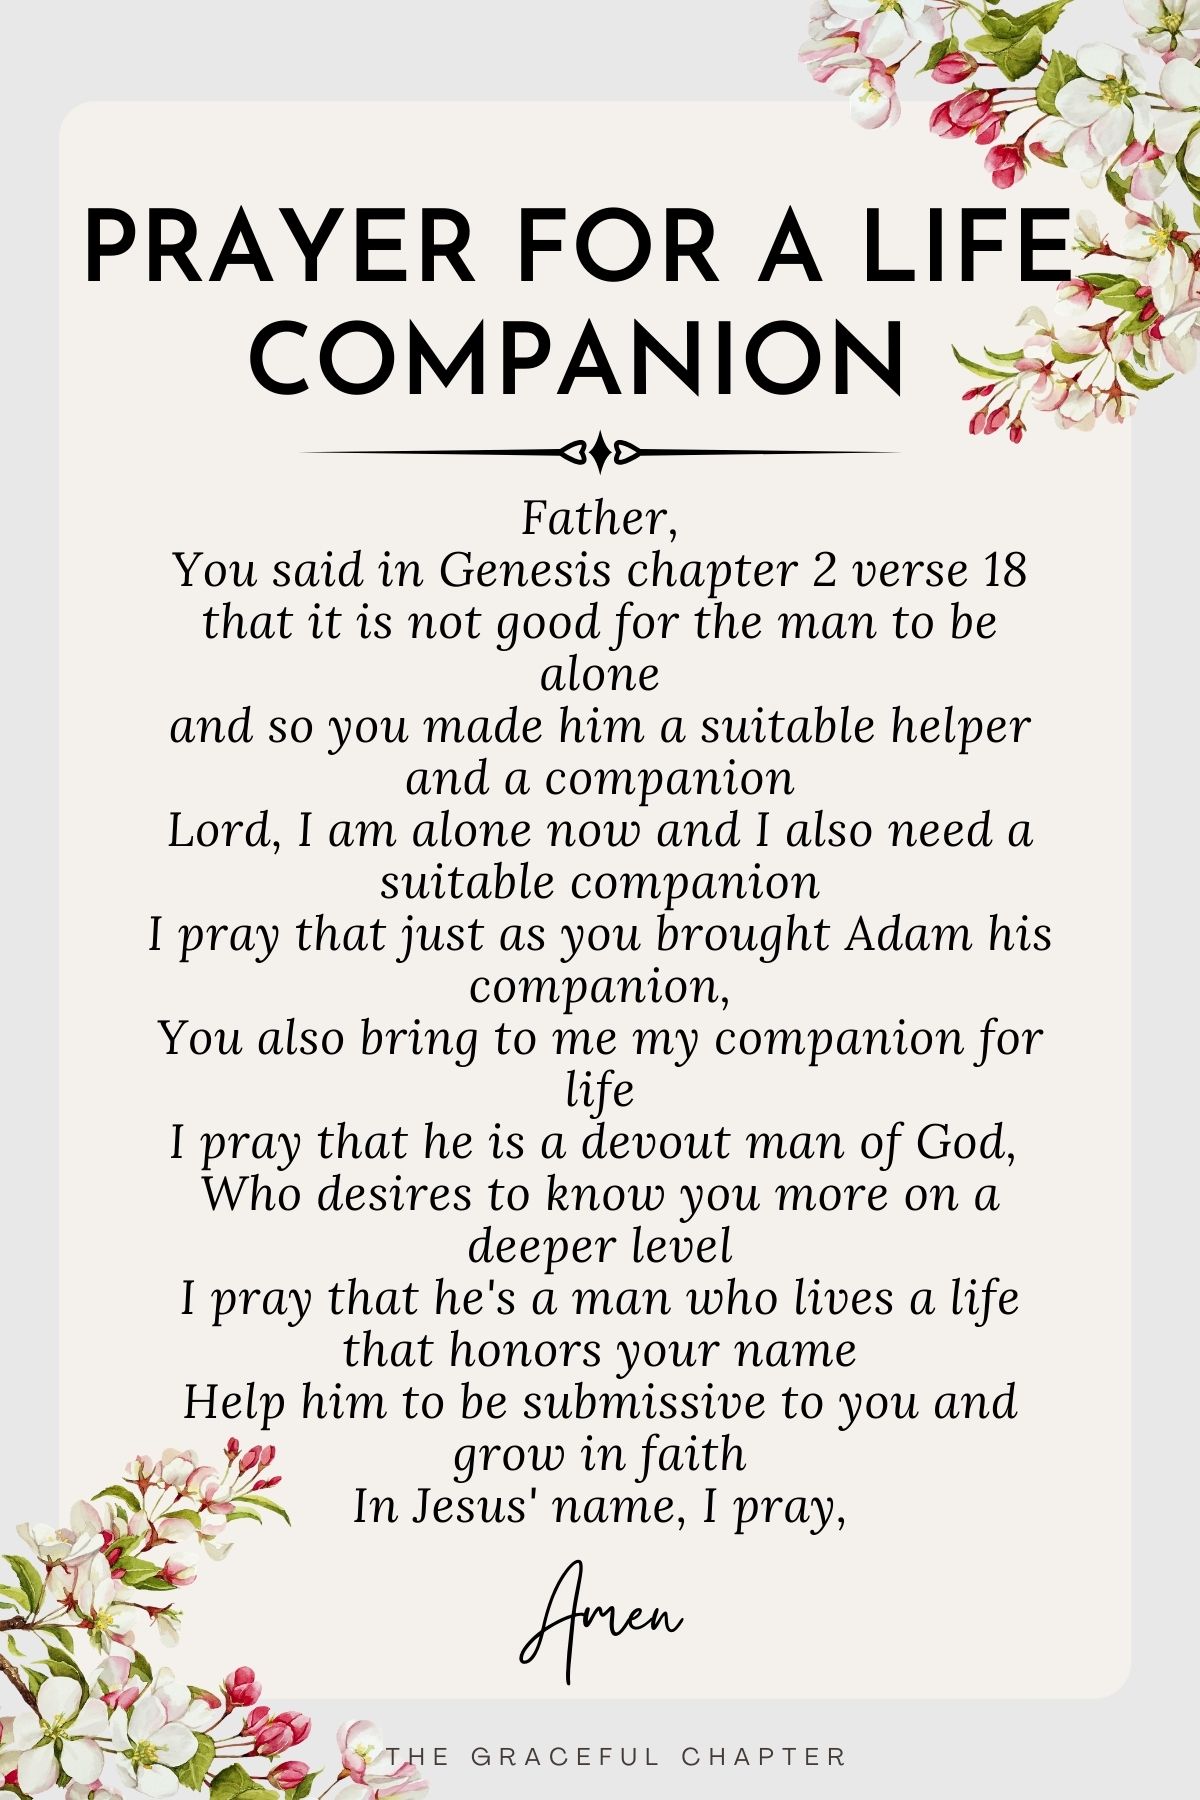 Prayer for a life companion